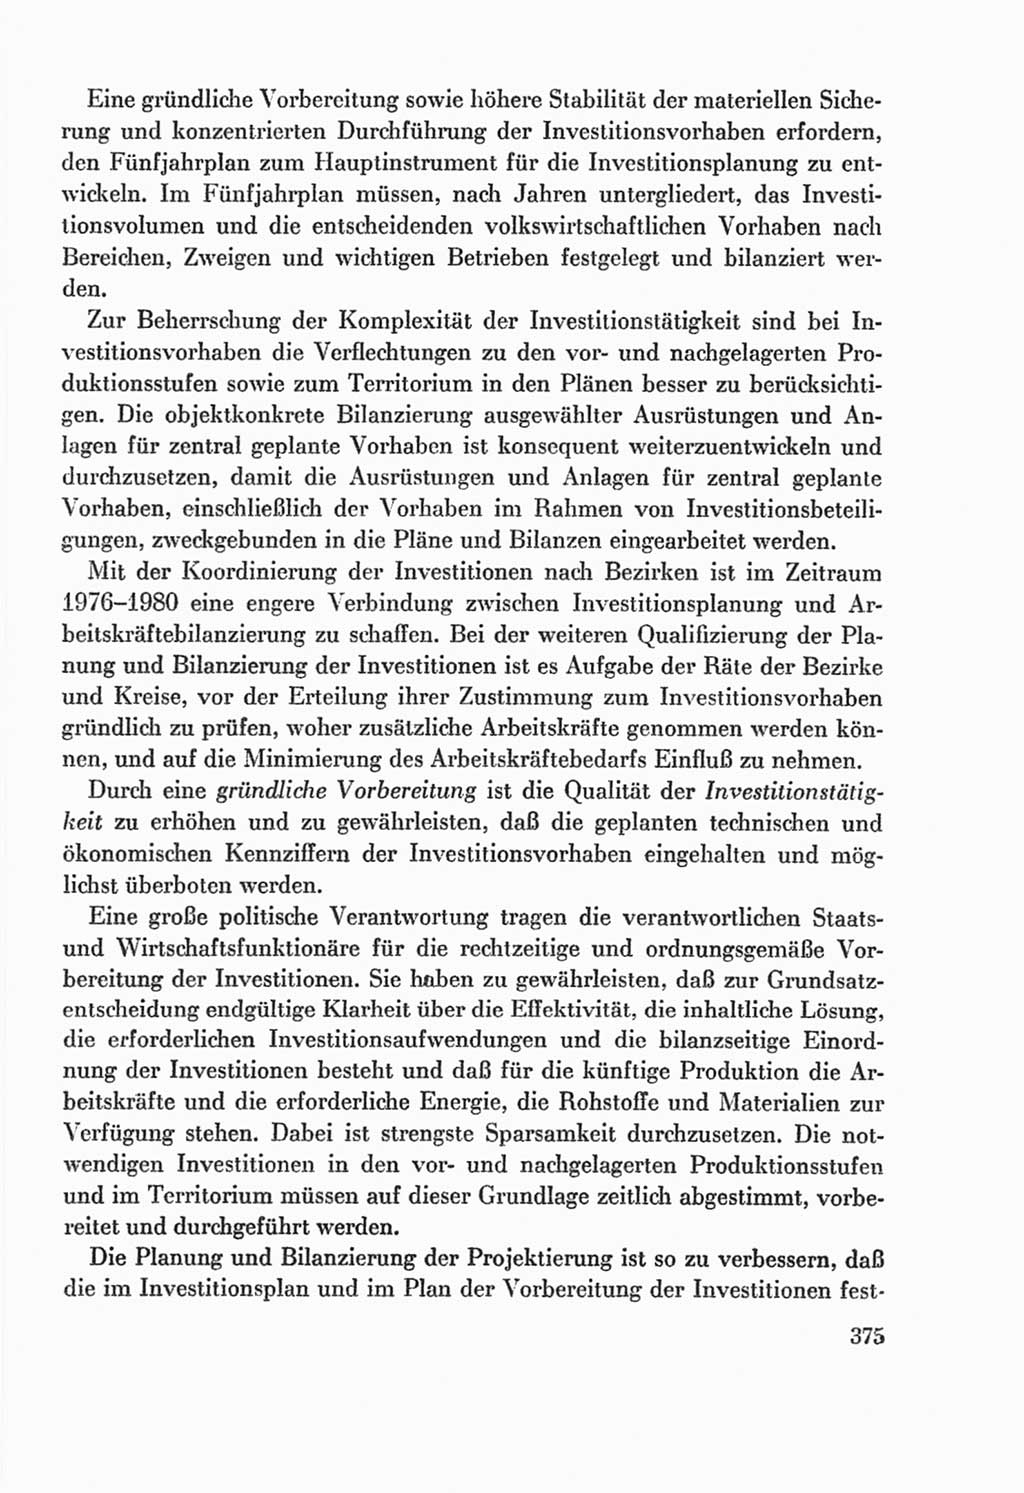 Protokoll der Verhandlungen des Ⅸ. Parteitages der Sozialistischen Einheitspartei Deutschlands (SED) [Deutsche Demokratische Republik (DDR)] 1976, Band 2, Seite 375 (Prot. Verh. Ⅸ. PT SED DDR 1976, Bd. 2, S. 375)